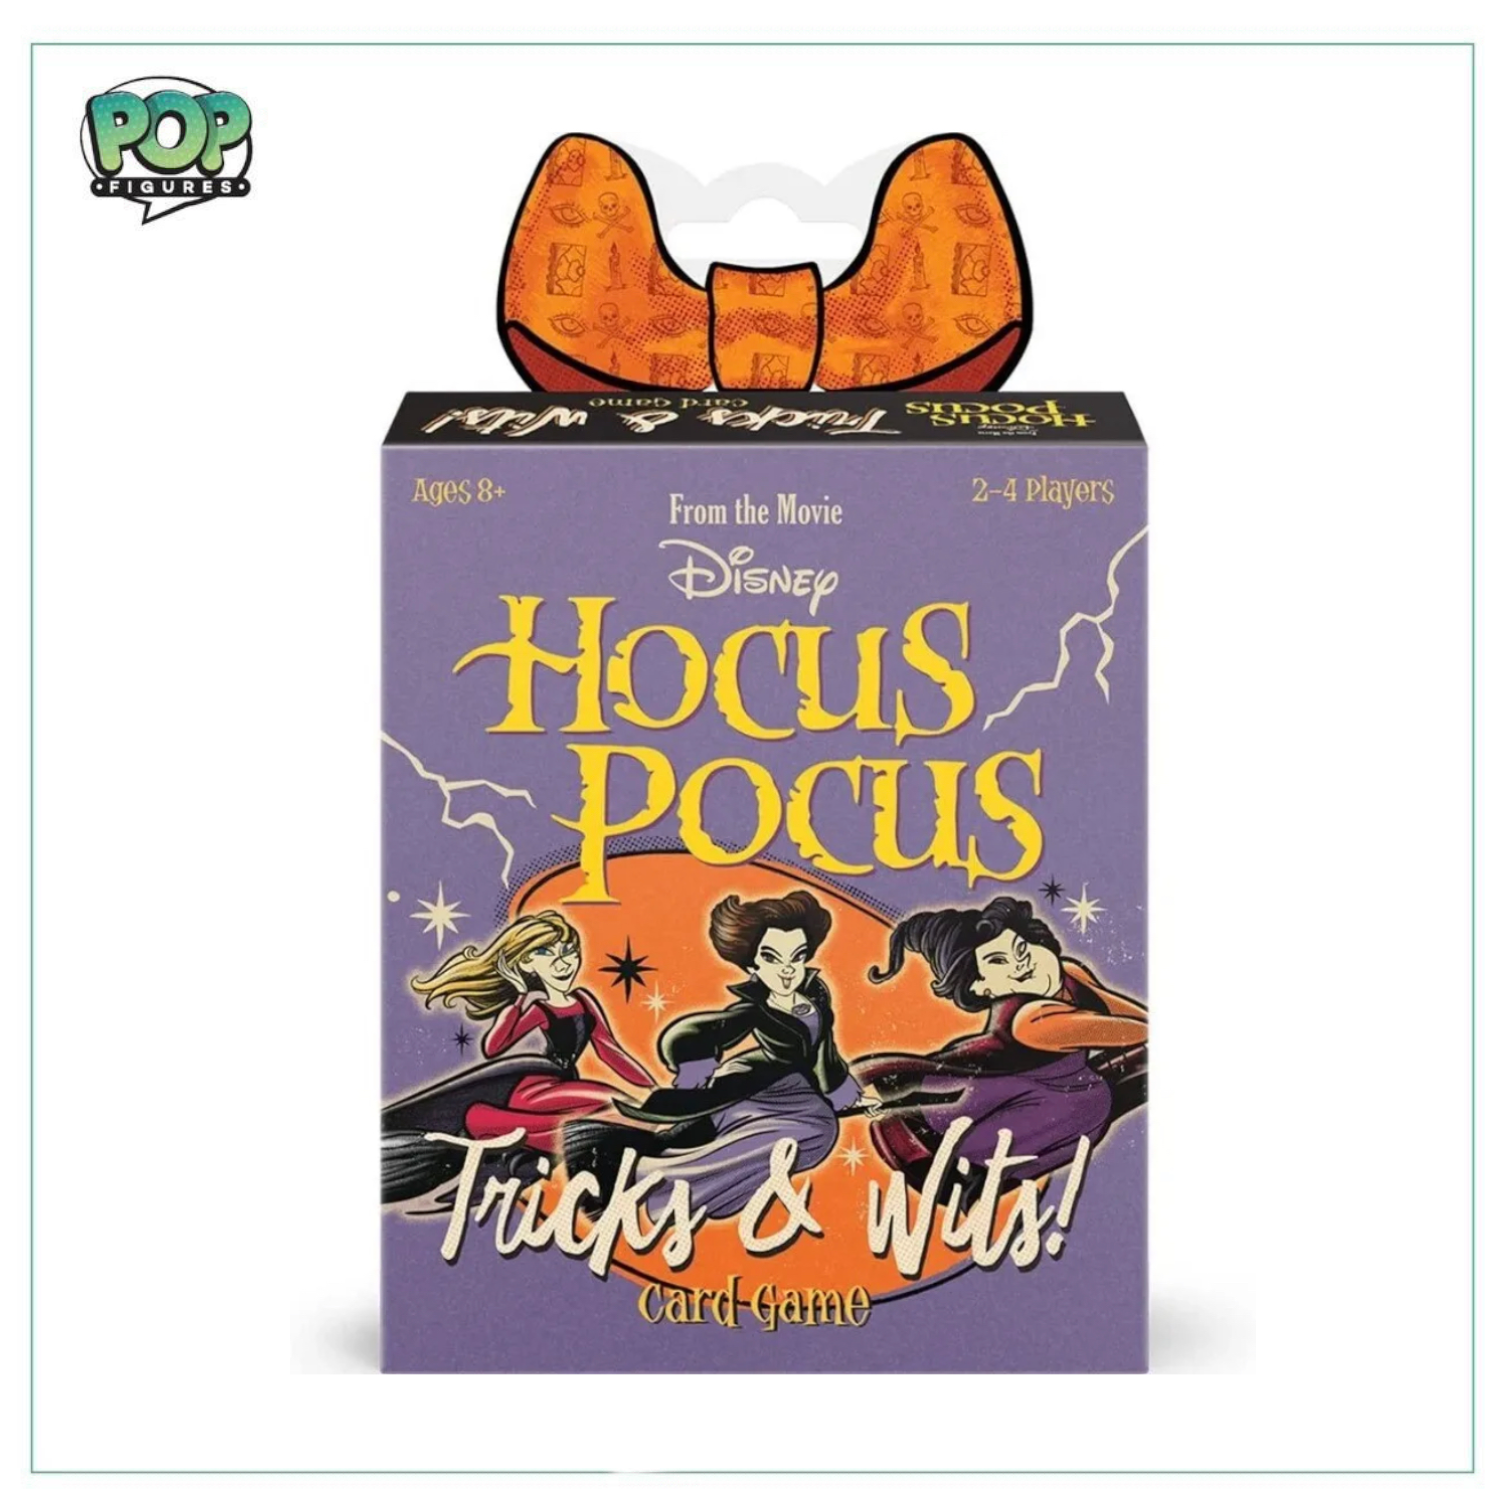 Hocus Pocus - Tricks & Wits Funko Card Game! - Disney